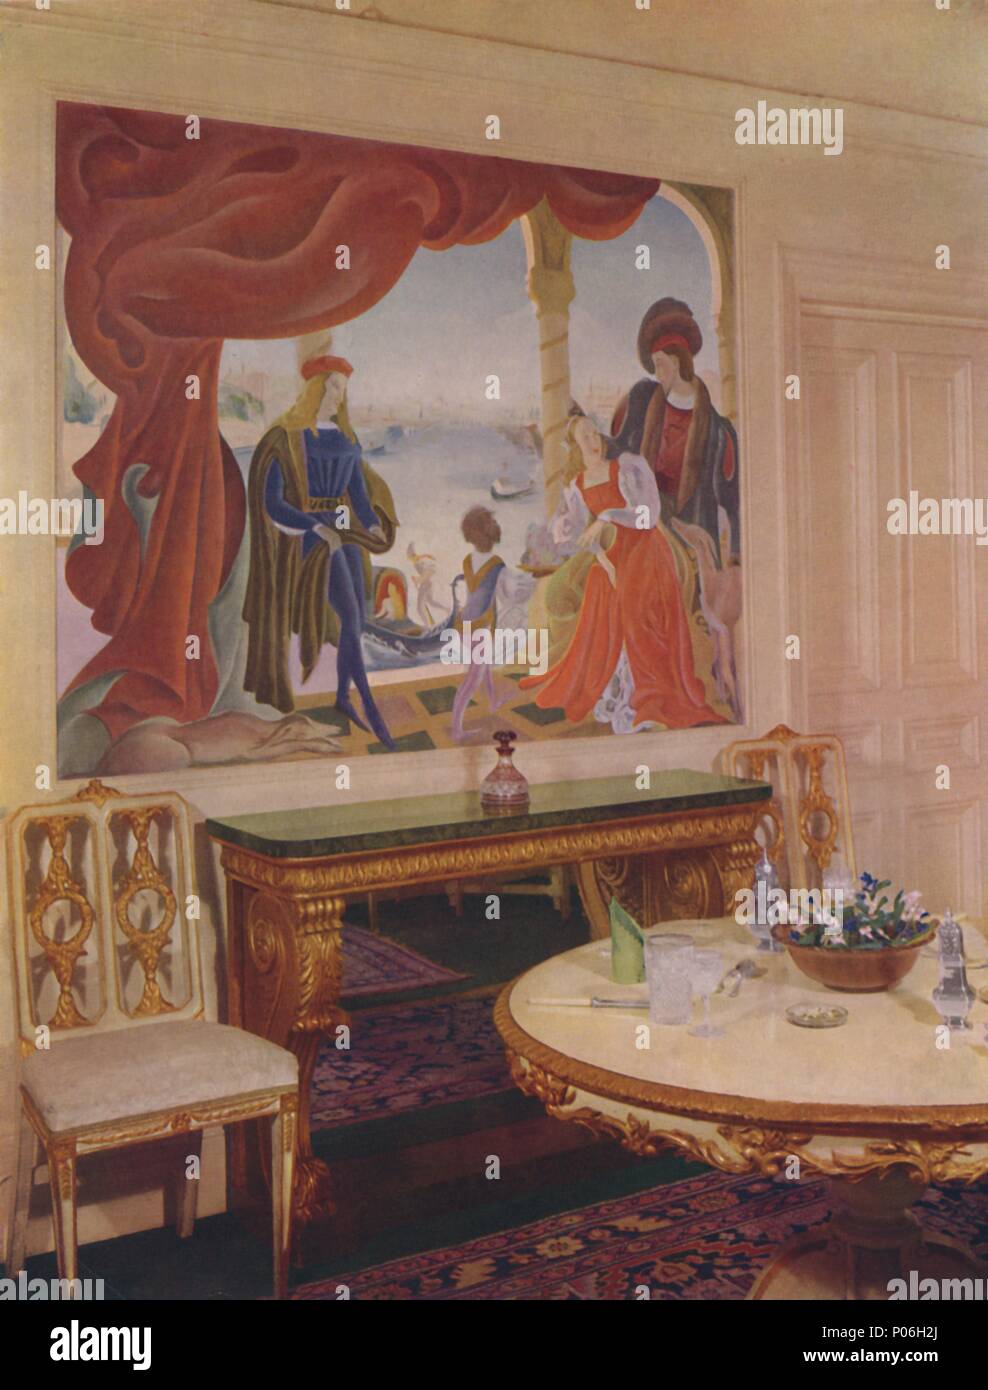 'MUral von Beatrice MacDermott, Darstellung einer venezianischen Szene, und in einem der Restaurants gestaltet - Zimmer Fenster Künstler: Unbekannt. Stockfoto